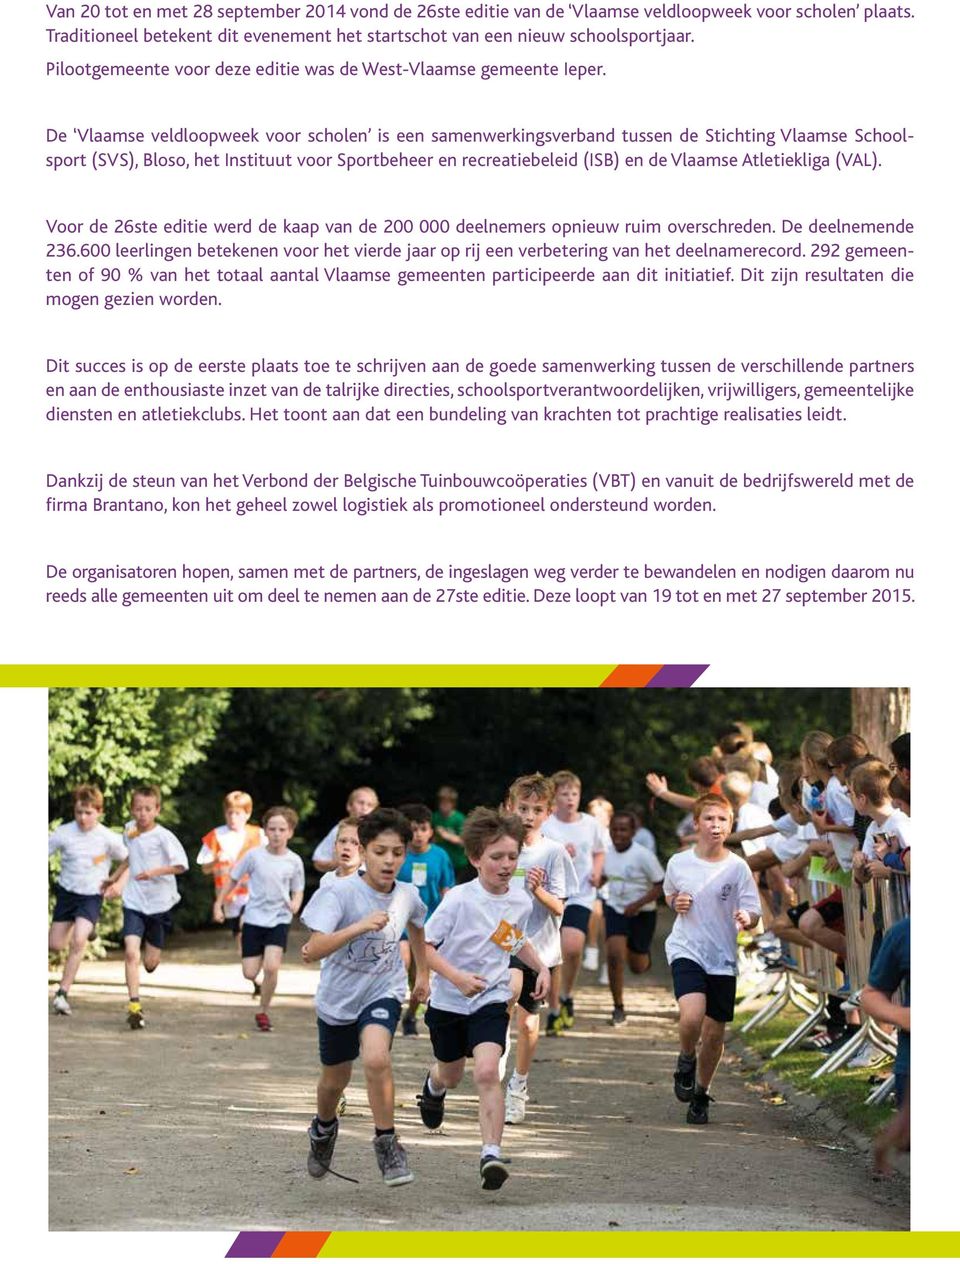 De Vlaamse veldloopweek voor scholen is een samenwerkingsverband tussen de Stichting Vlaamse Schoolsport (SVS), Bloso, het Instituut voor Sportbeheer en recreatiebeleid (ISB) en de Vlaamse